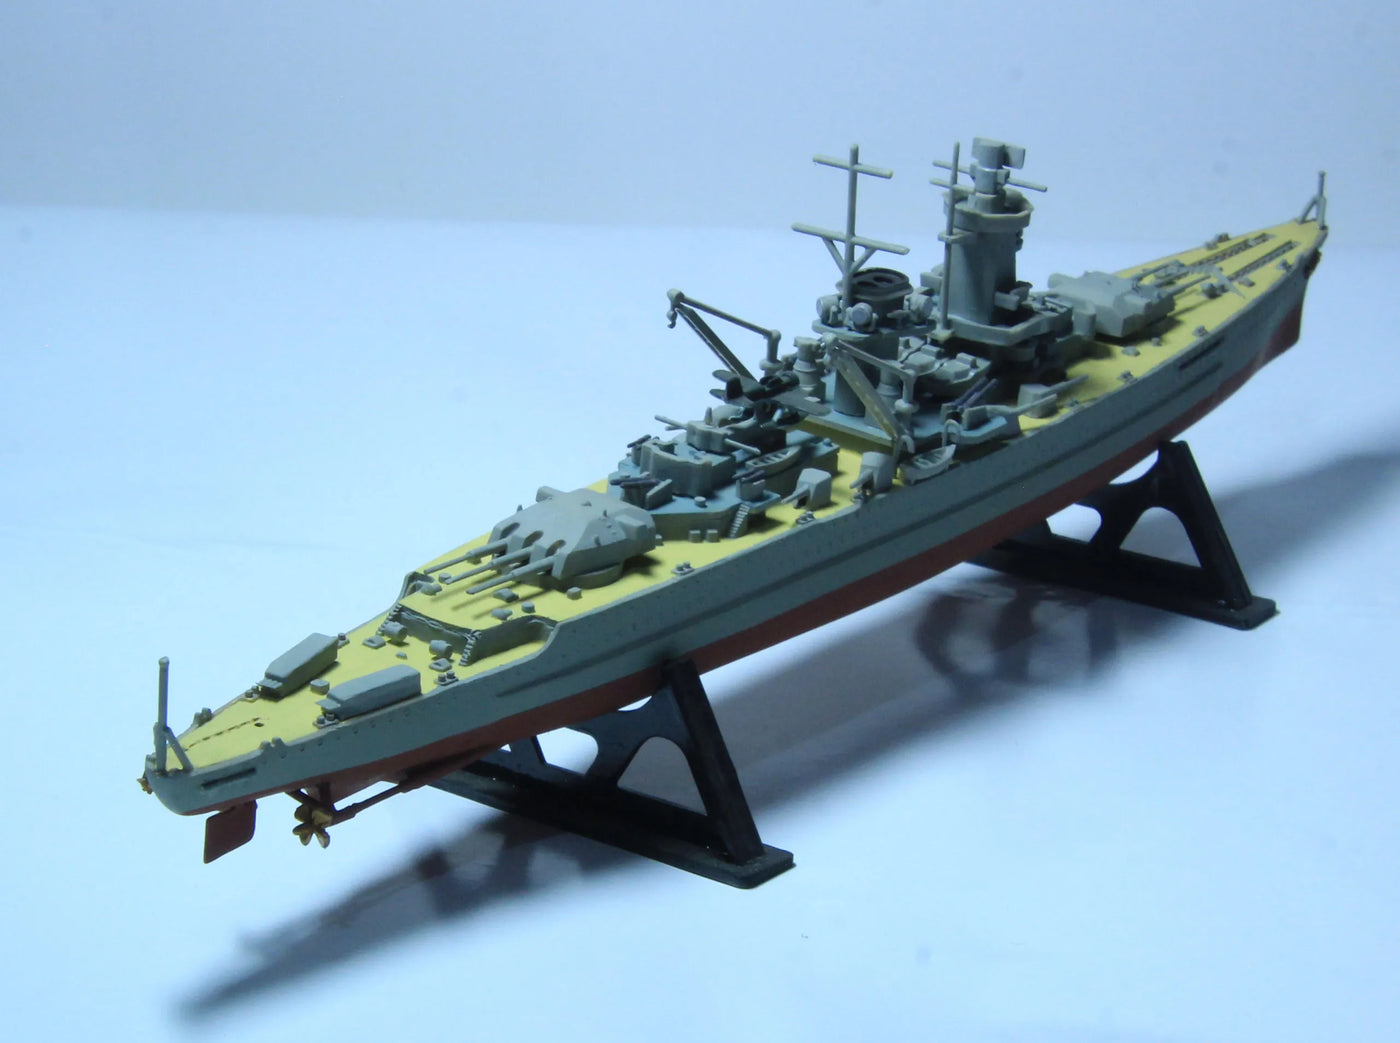 1600 Admiral Graf Spee